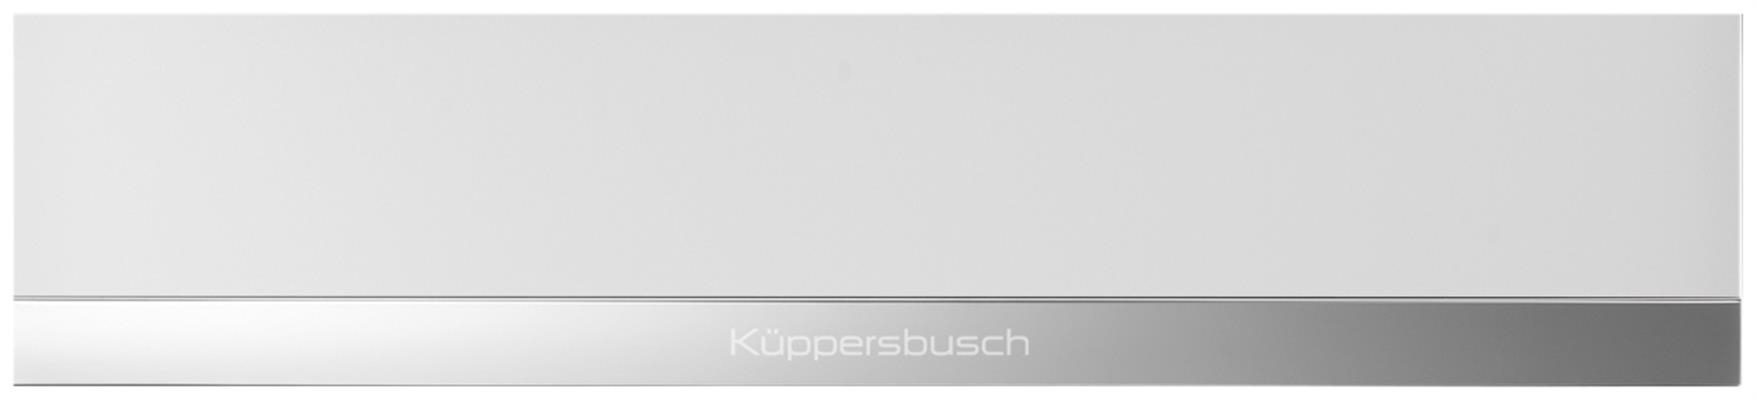 6014W3-Kuppersbusch-Opberglades